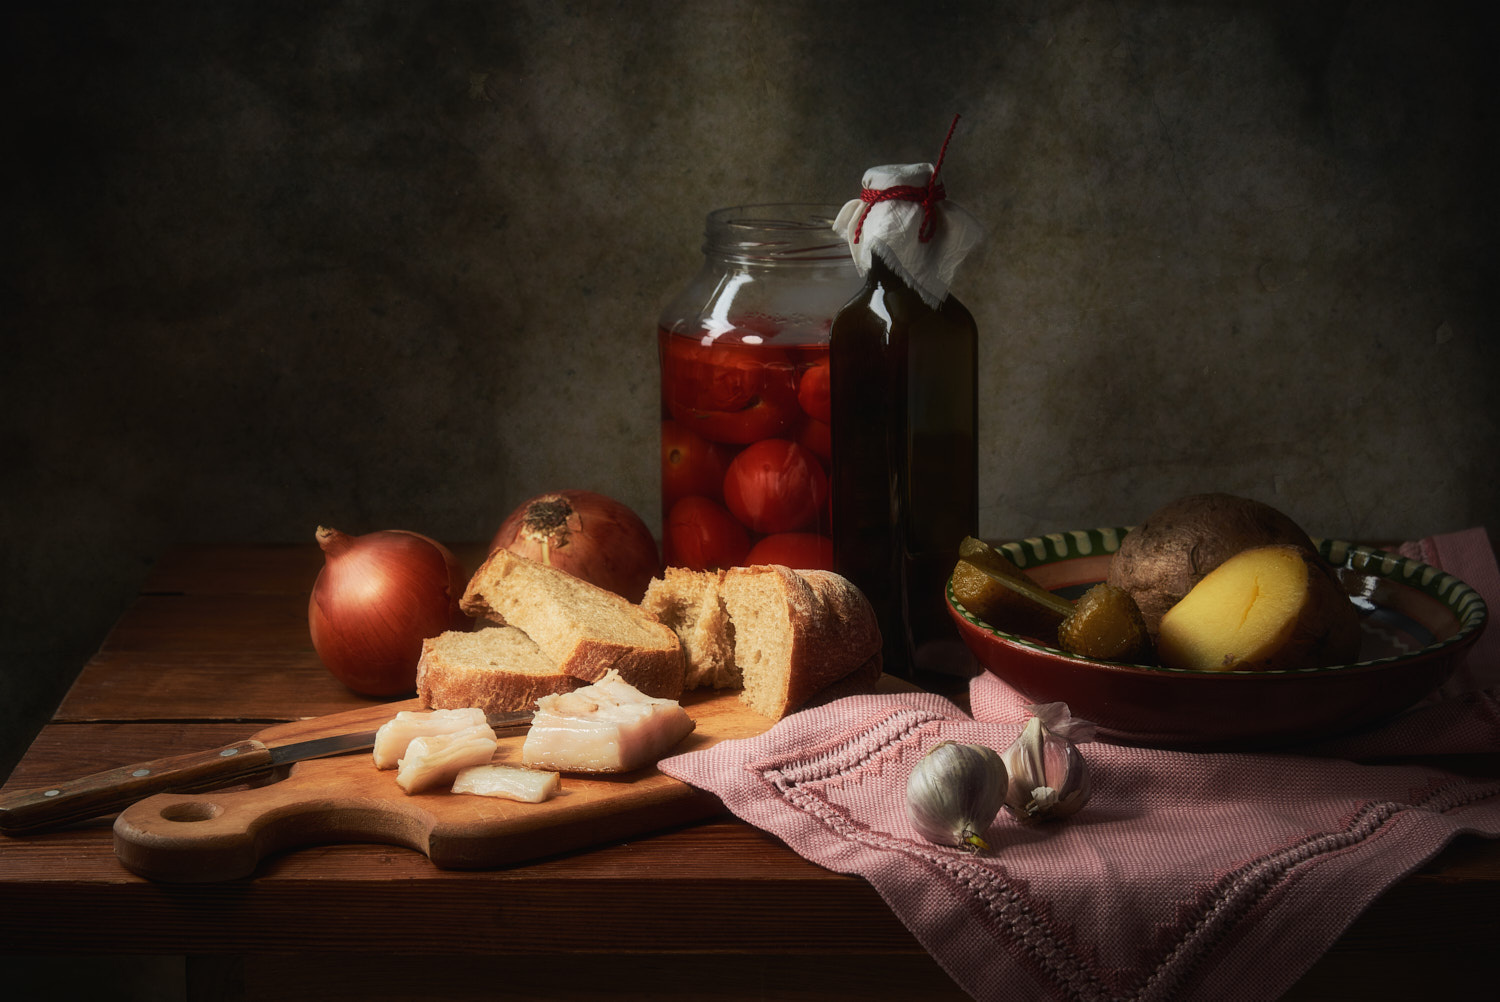 Натюрморт с кусочком сала натюрморт композиция постановка сцена еда сало хлеб лук чеснок помидоры быт кухня